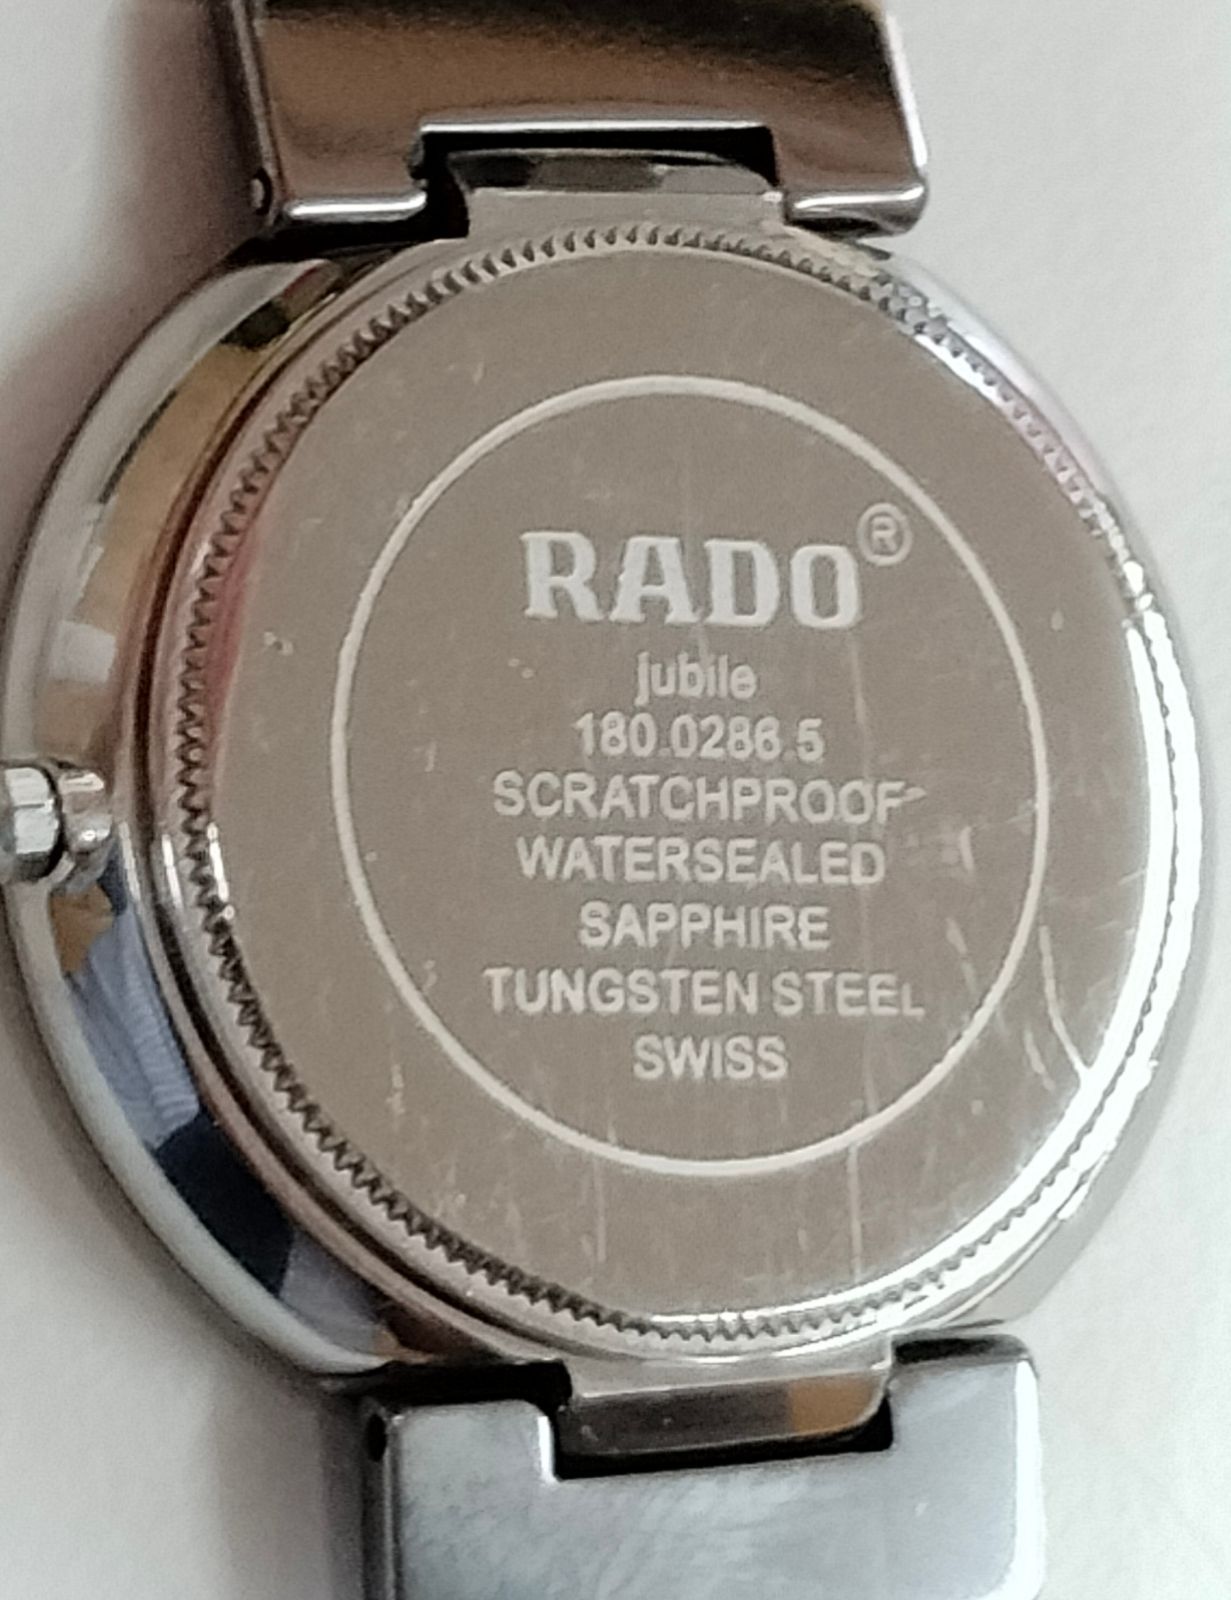 美品 新品電池交換】RADO ラドー jubile 型番180.0286.5 レディース